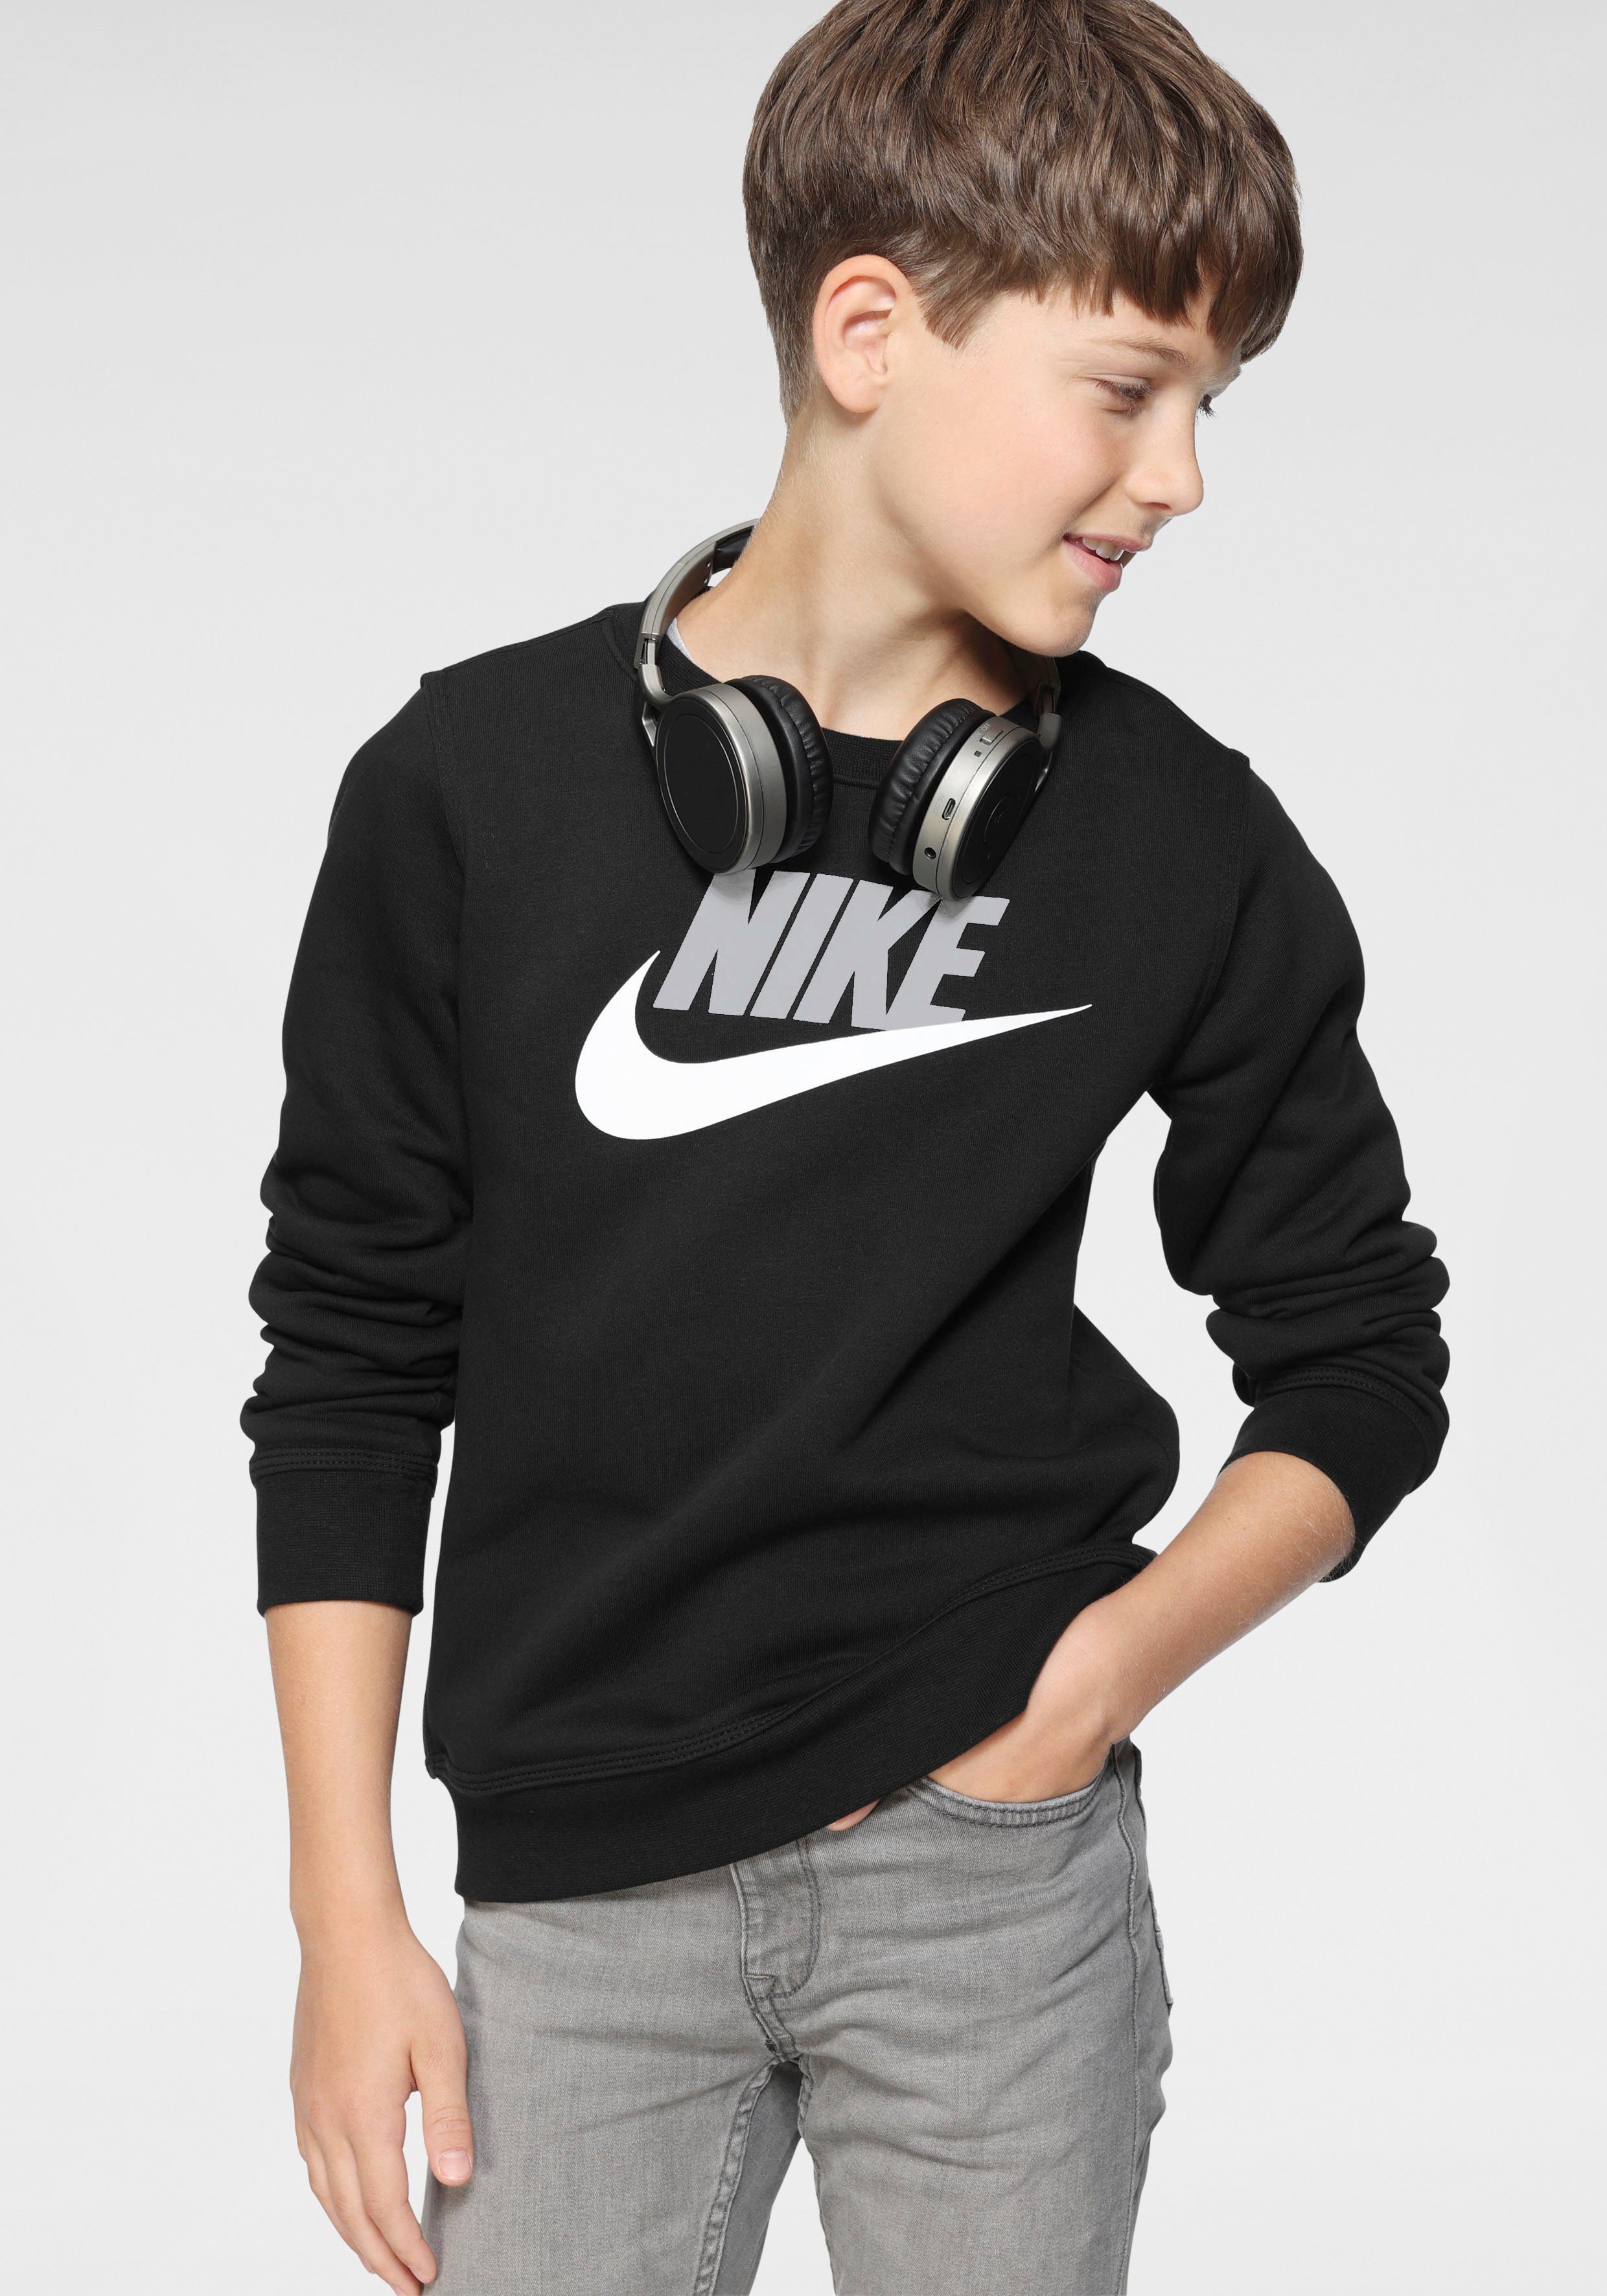 Günstige Nike Jungenmode online kaufen | OTTO